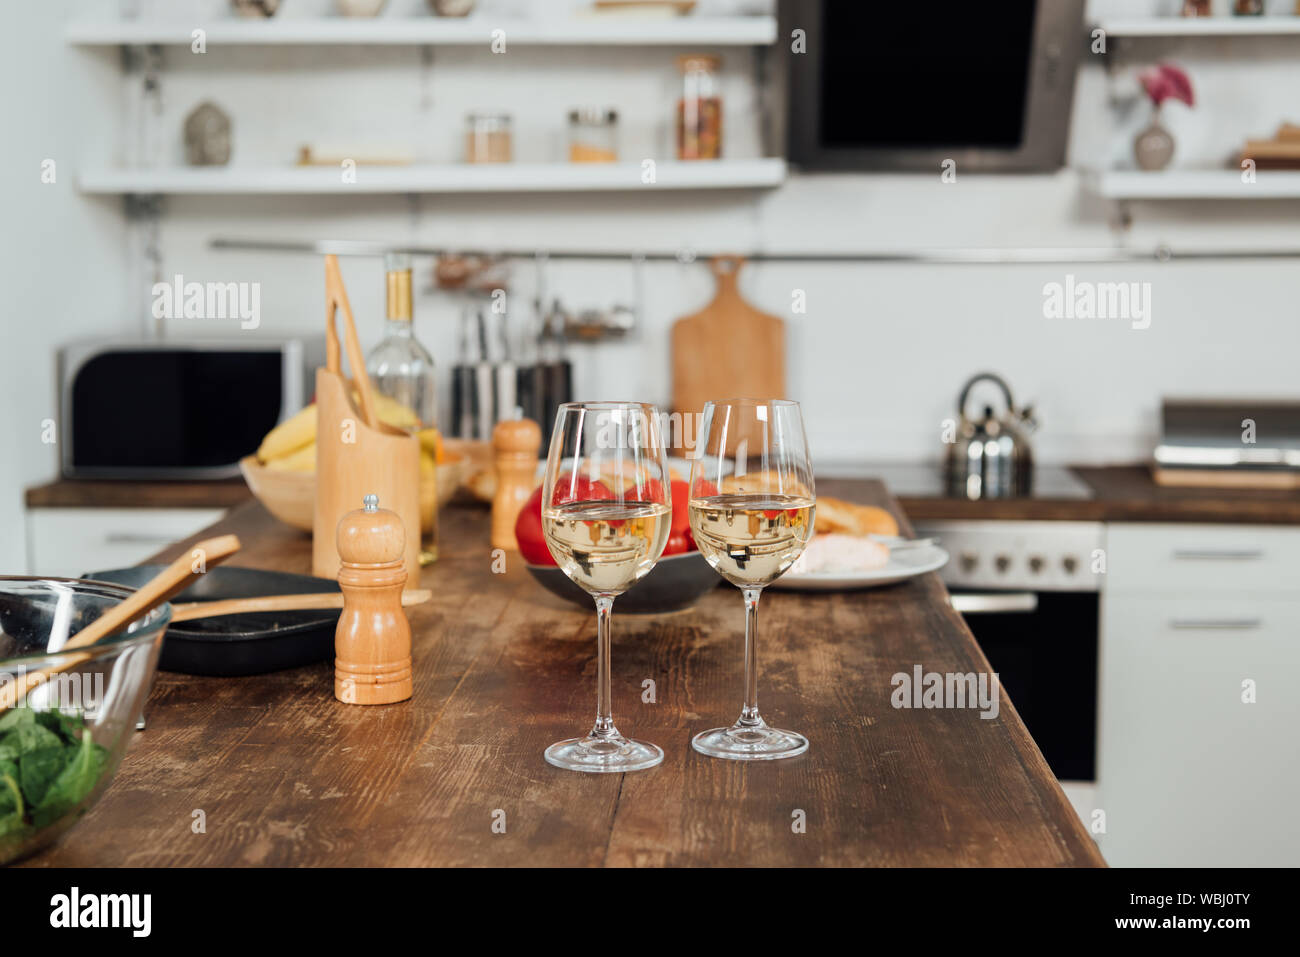 Wein Gläser mit Wein, Küche und Geschirr auf dem Tisch in der Küche Stockfoto